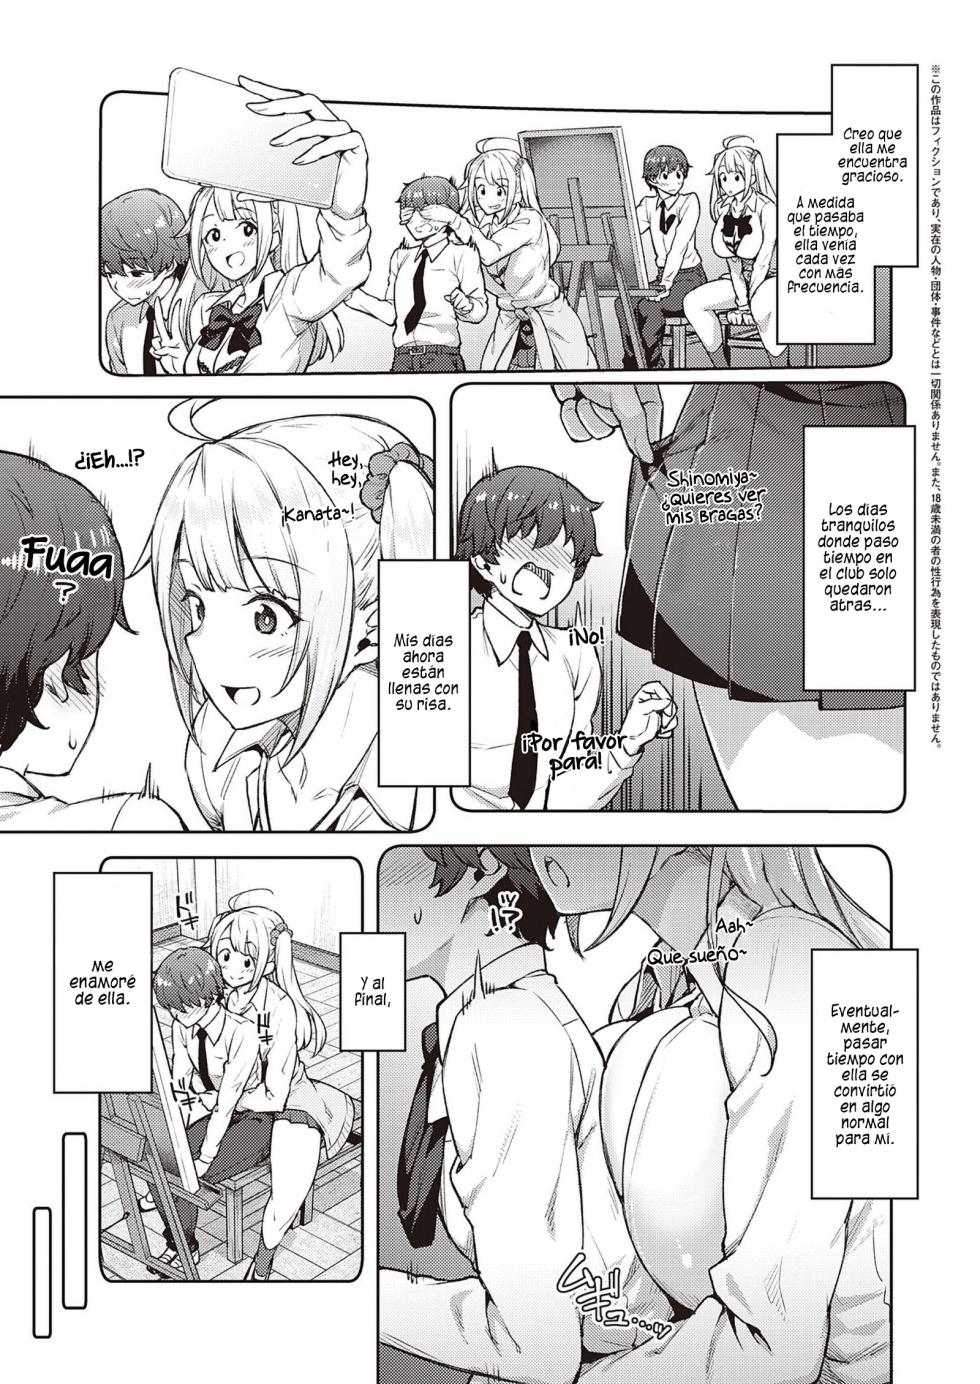 Por favor no me molestes, Tachibana-san - Page 3